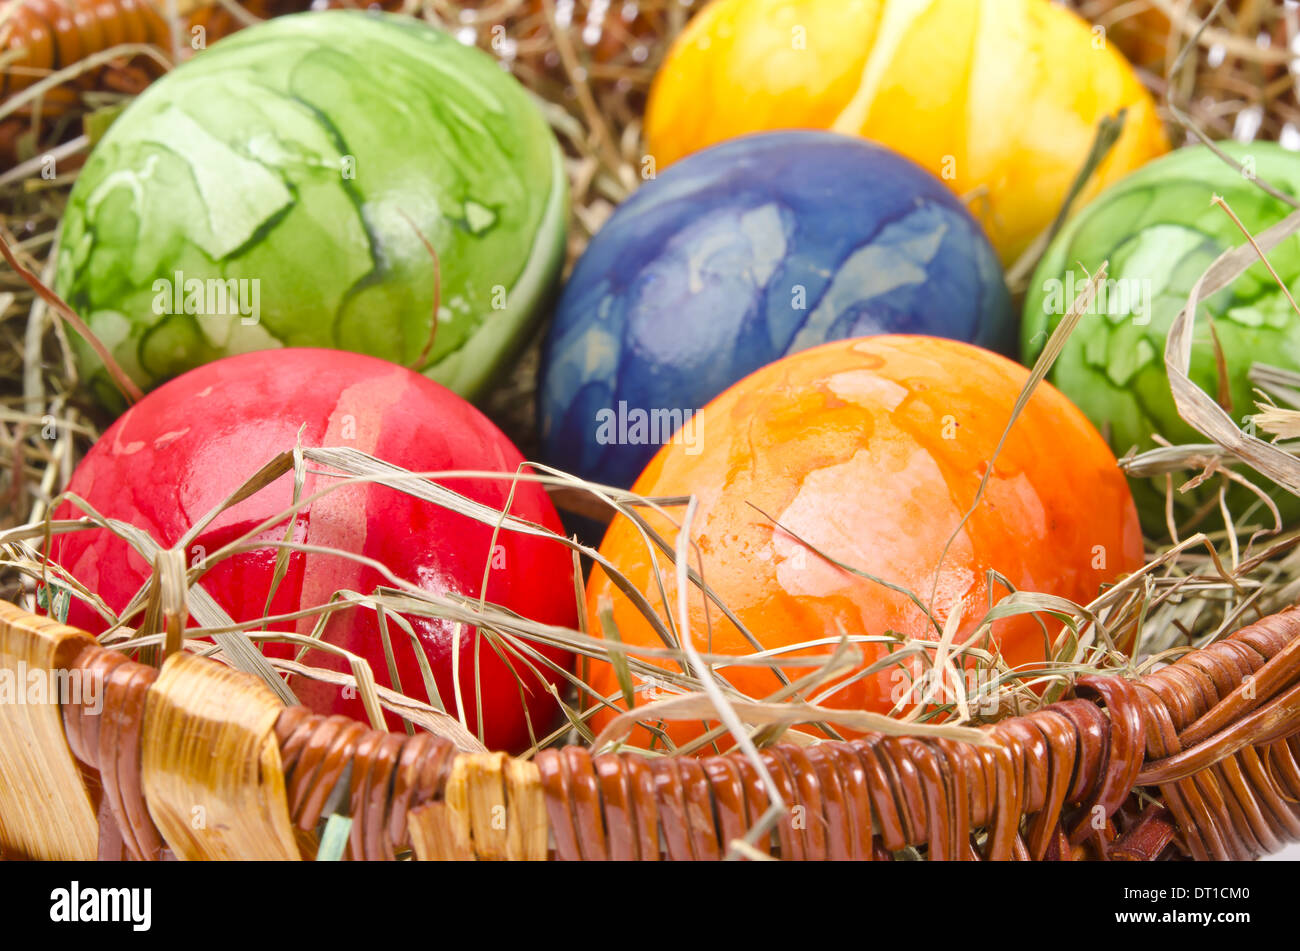 Easter egg Stockfoto